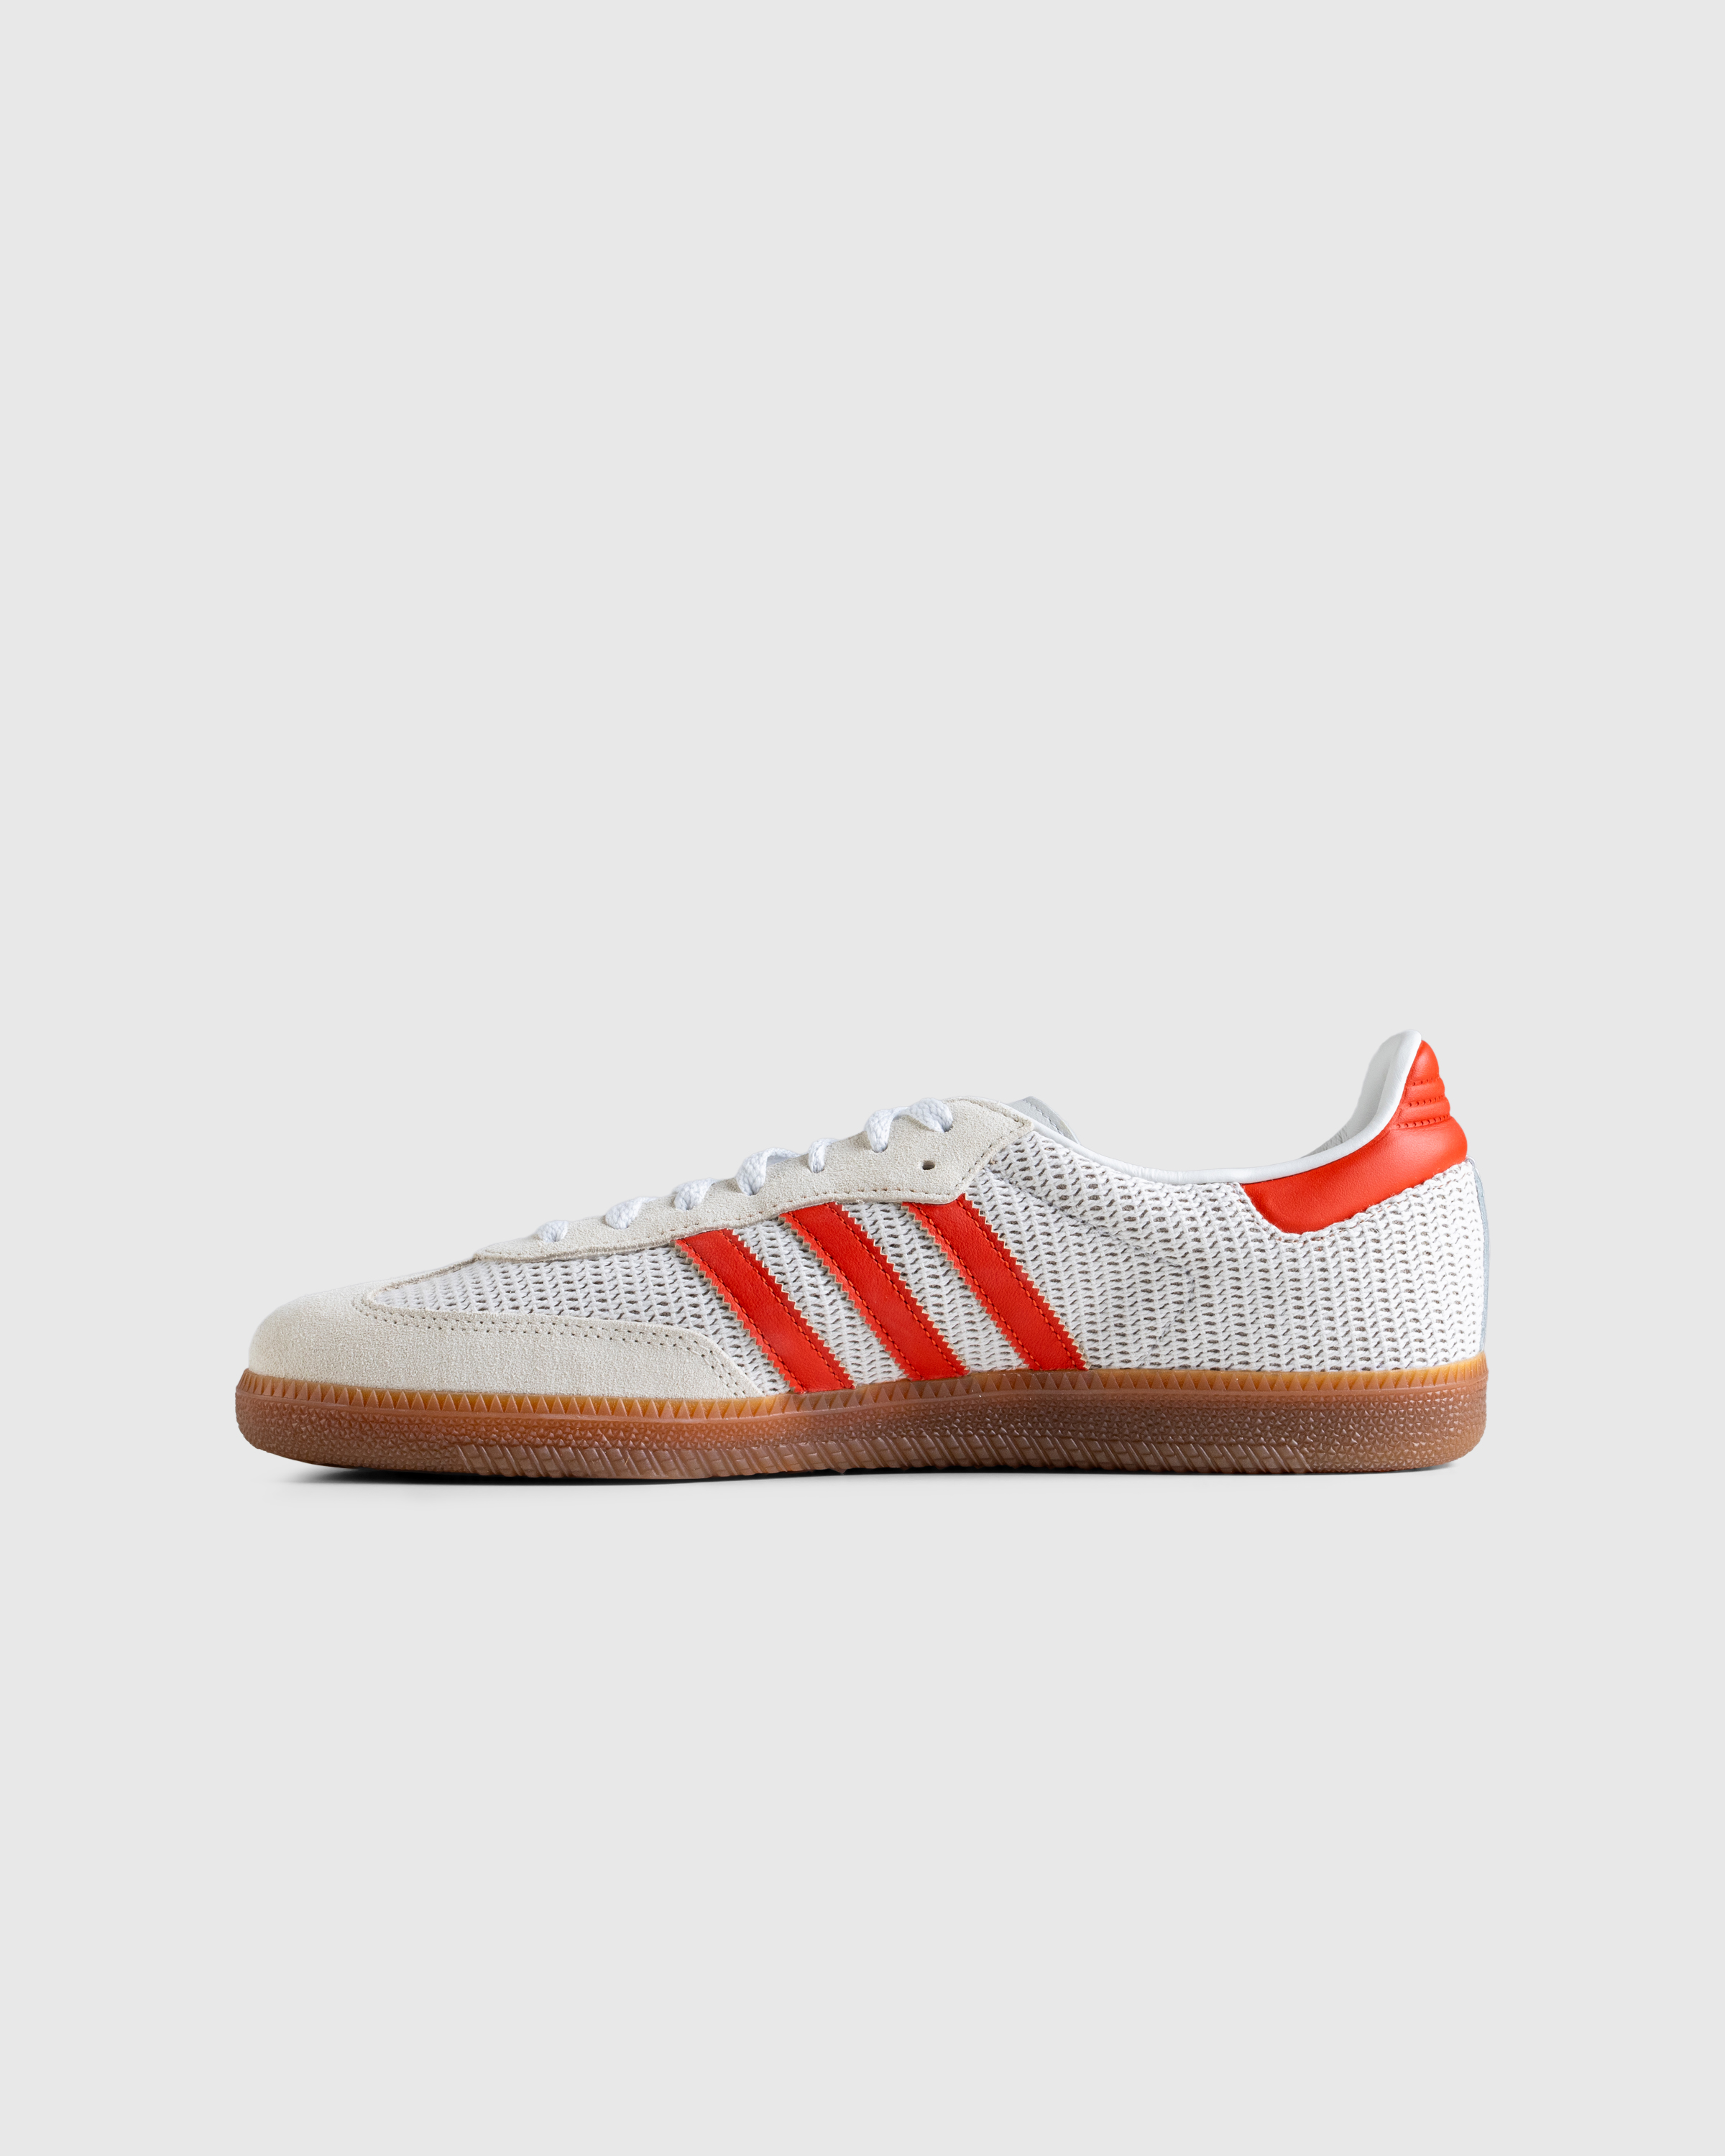 Adidas – Samba OG Crystal White - Sneakers - White - Image 2